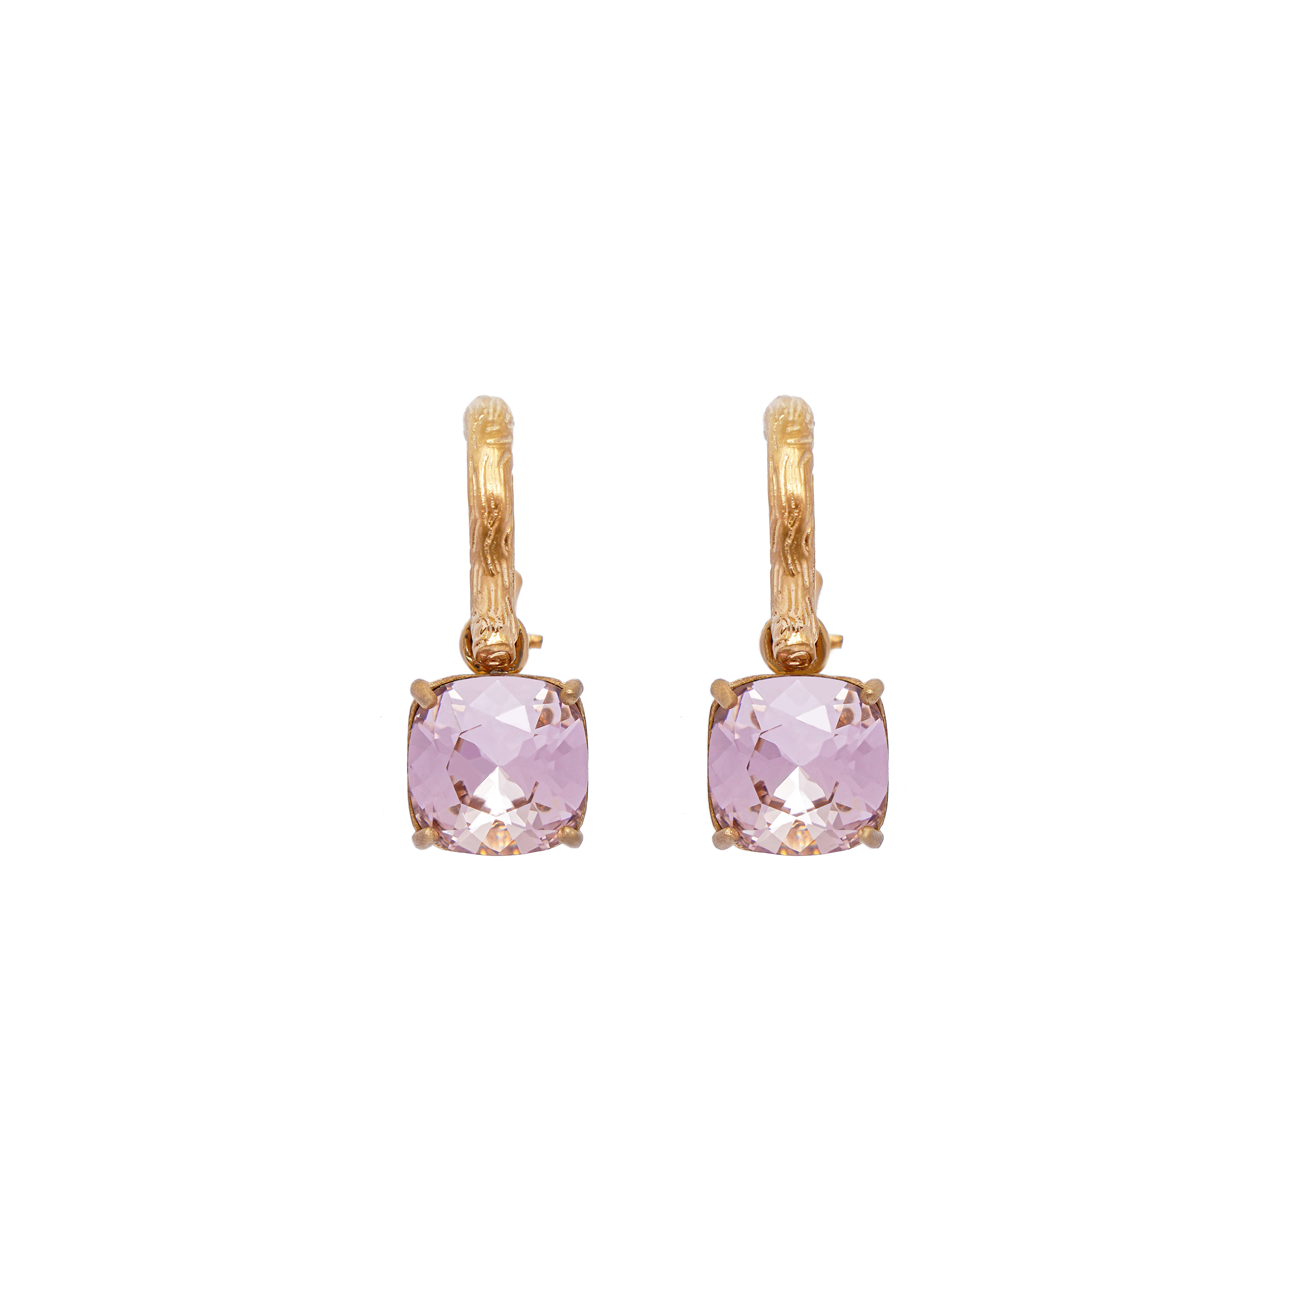 Carla Swarovski earrings - Pink favourite